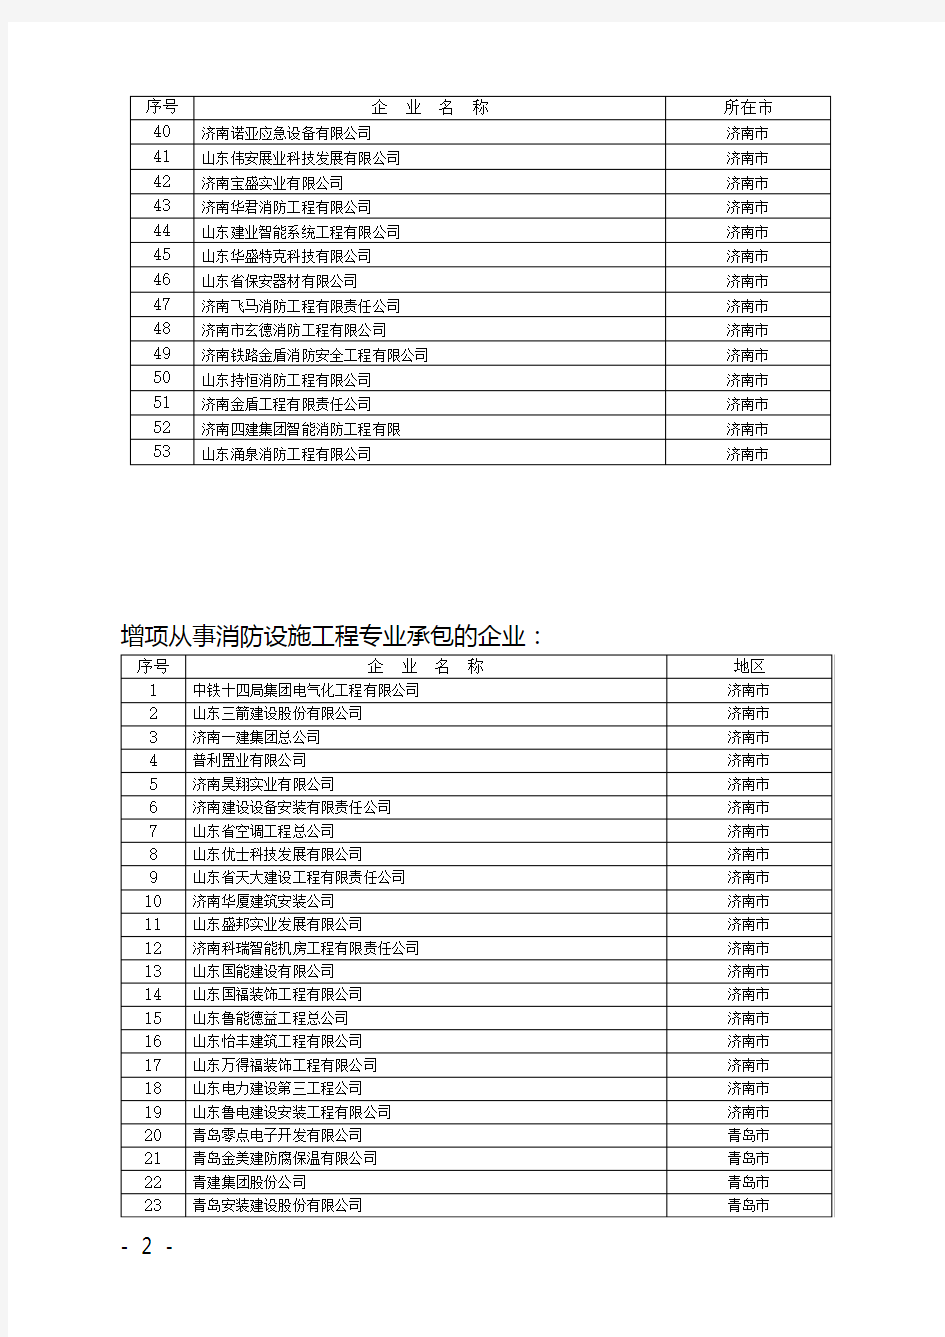 济南市全部消防工程企业名单